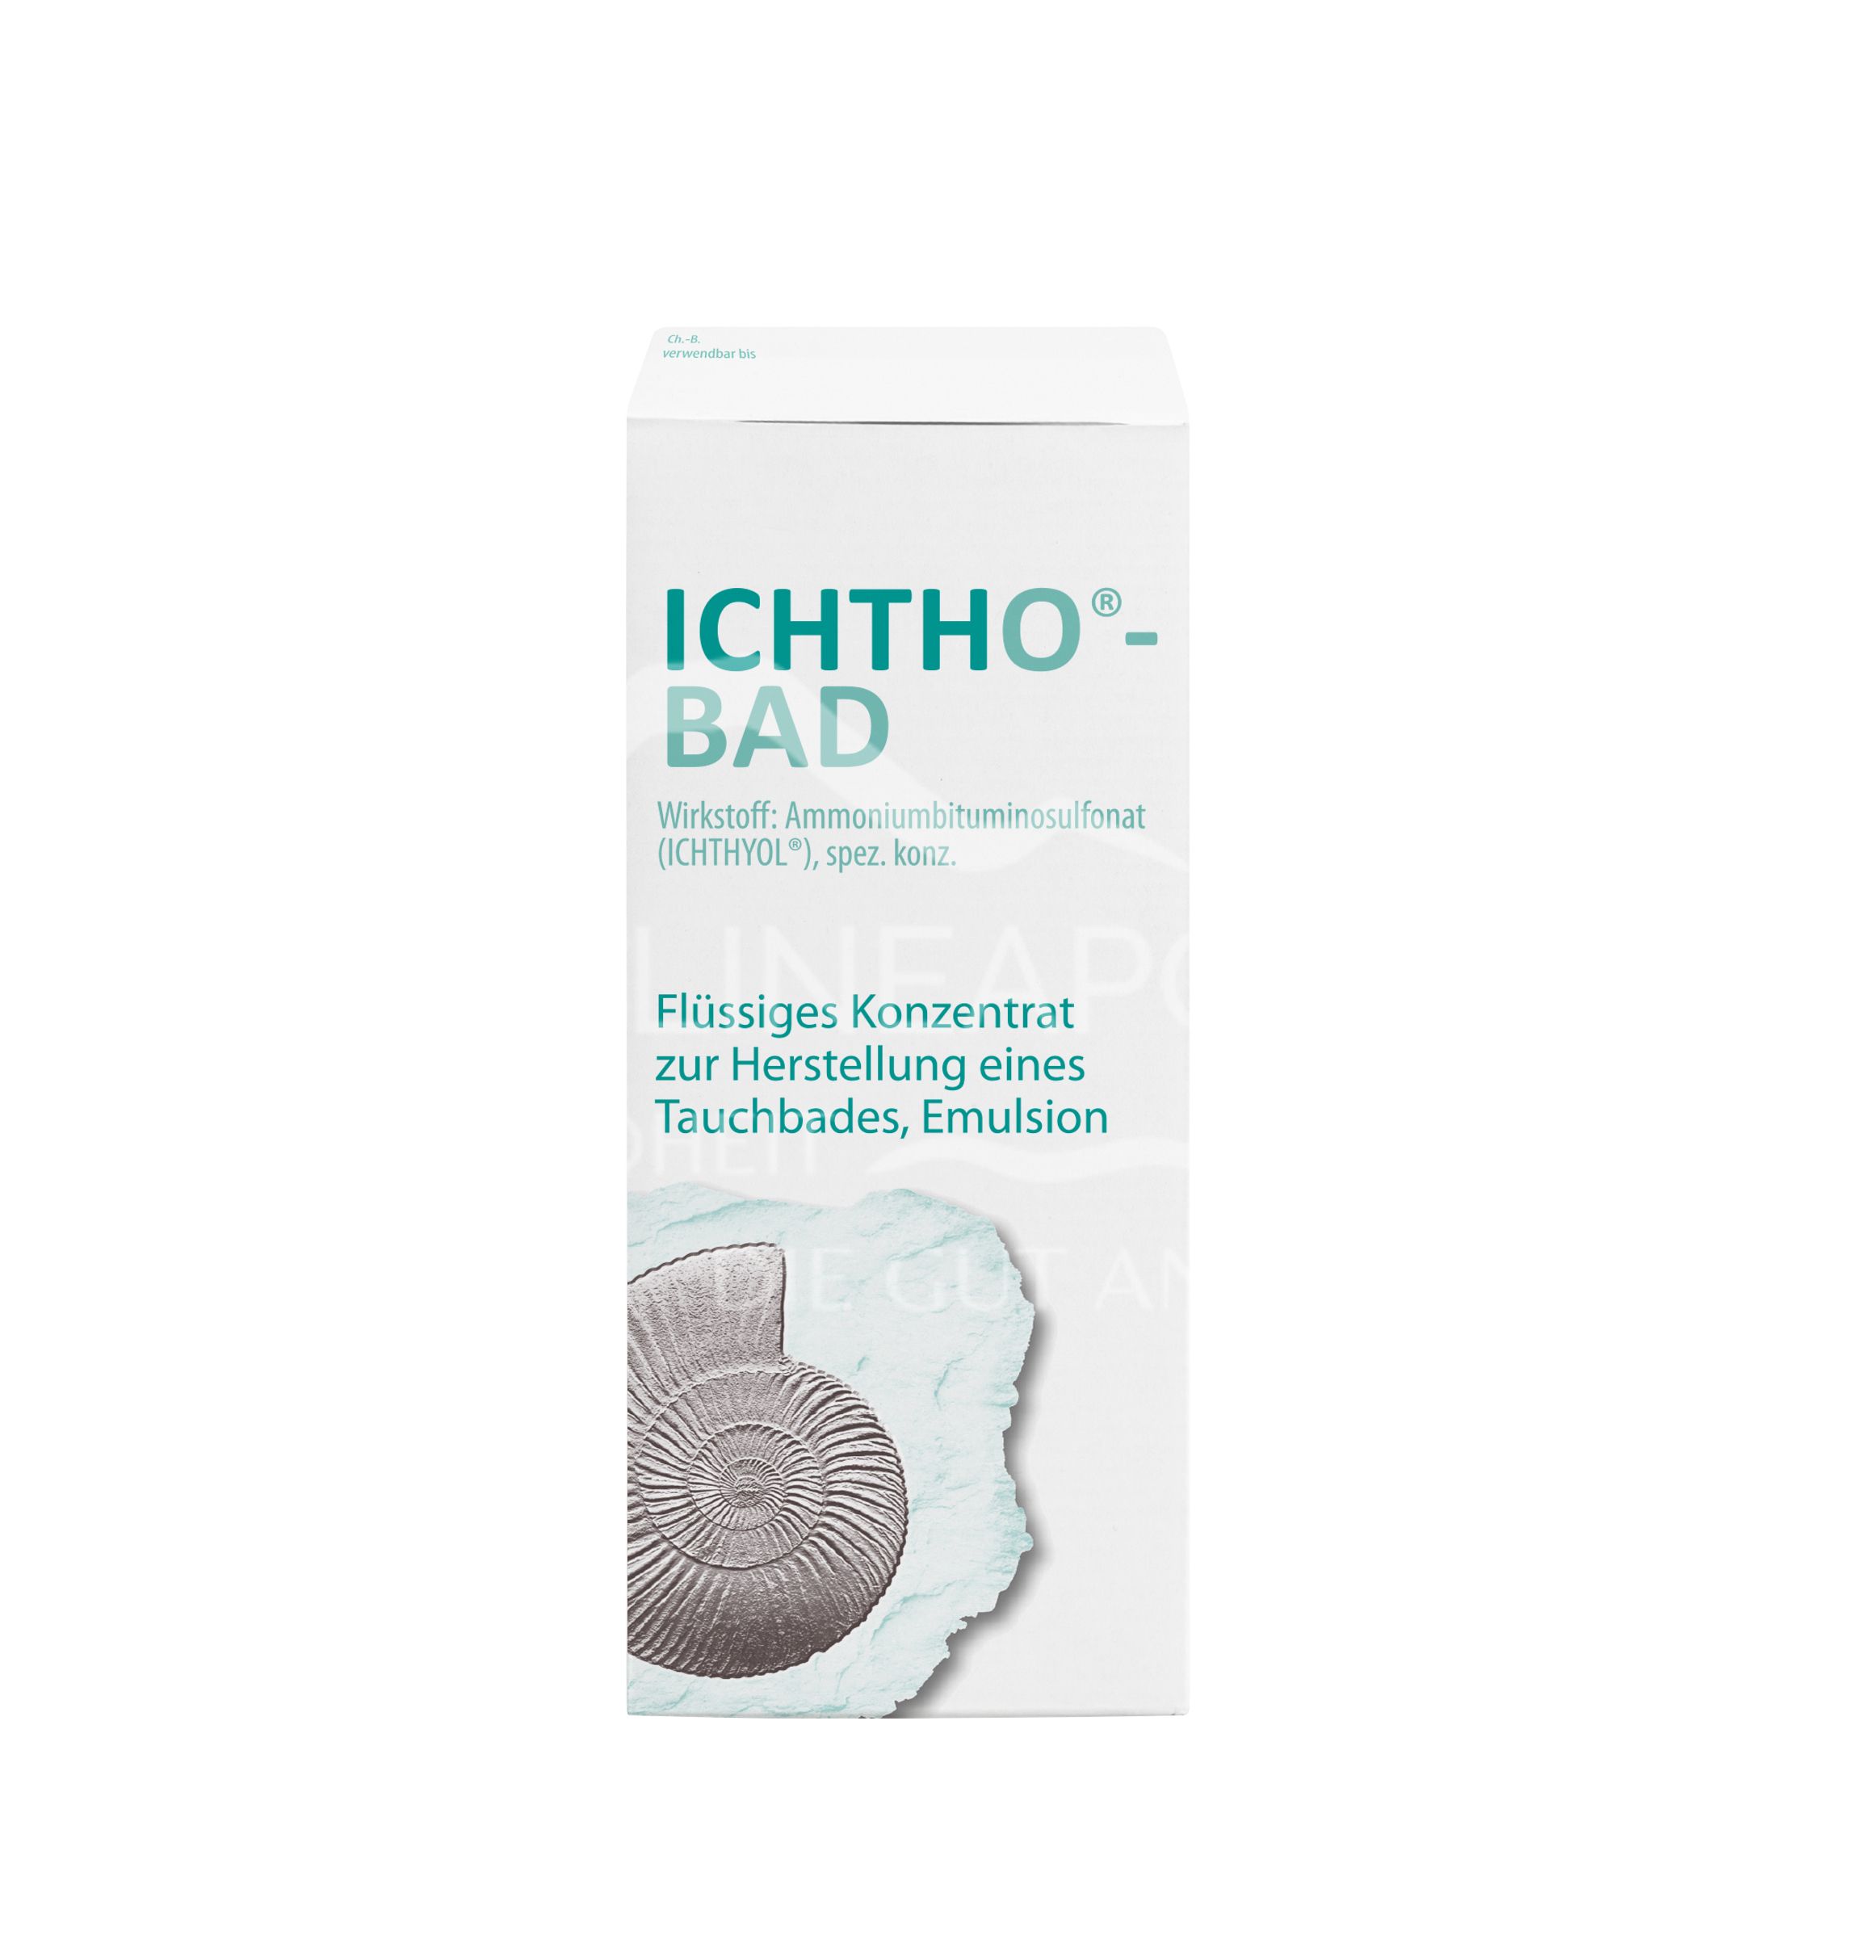 Ichtho®-Bad - Flüssiges Konzentrat